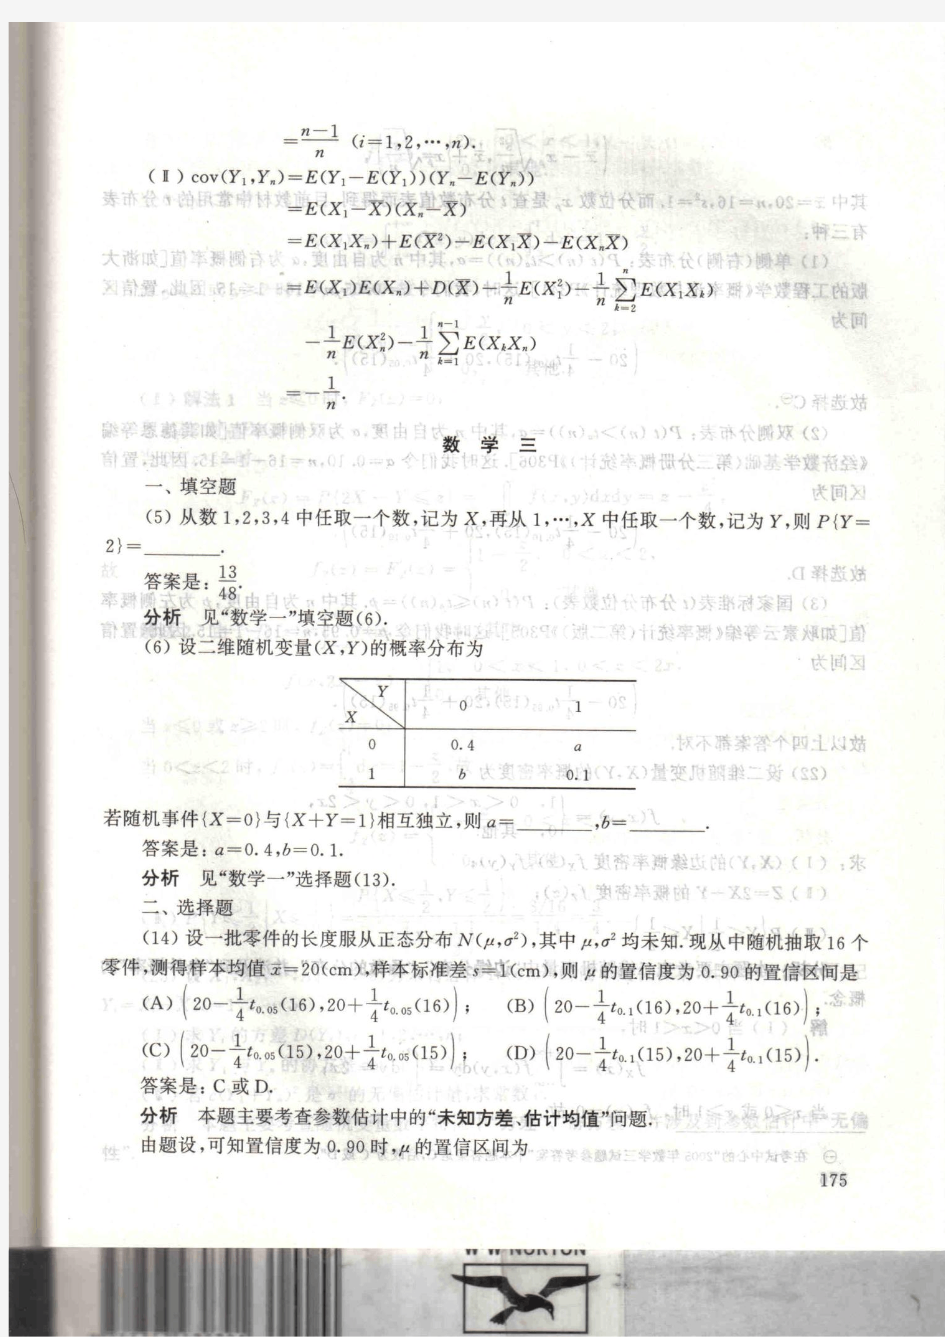 新东方_北京大学_姚孟臣_概率论与数理统计讲义_(提高篇)_176-最后一页